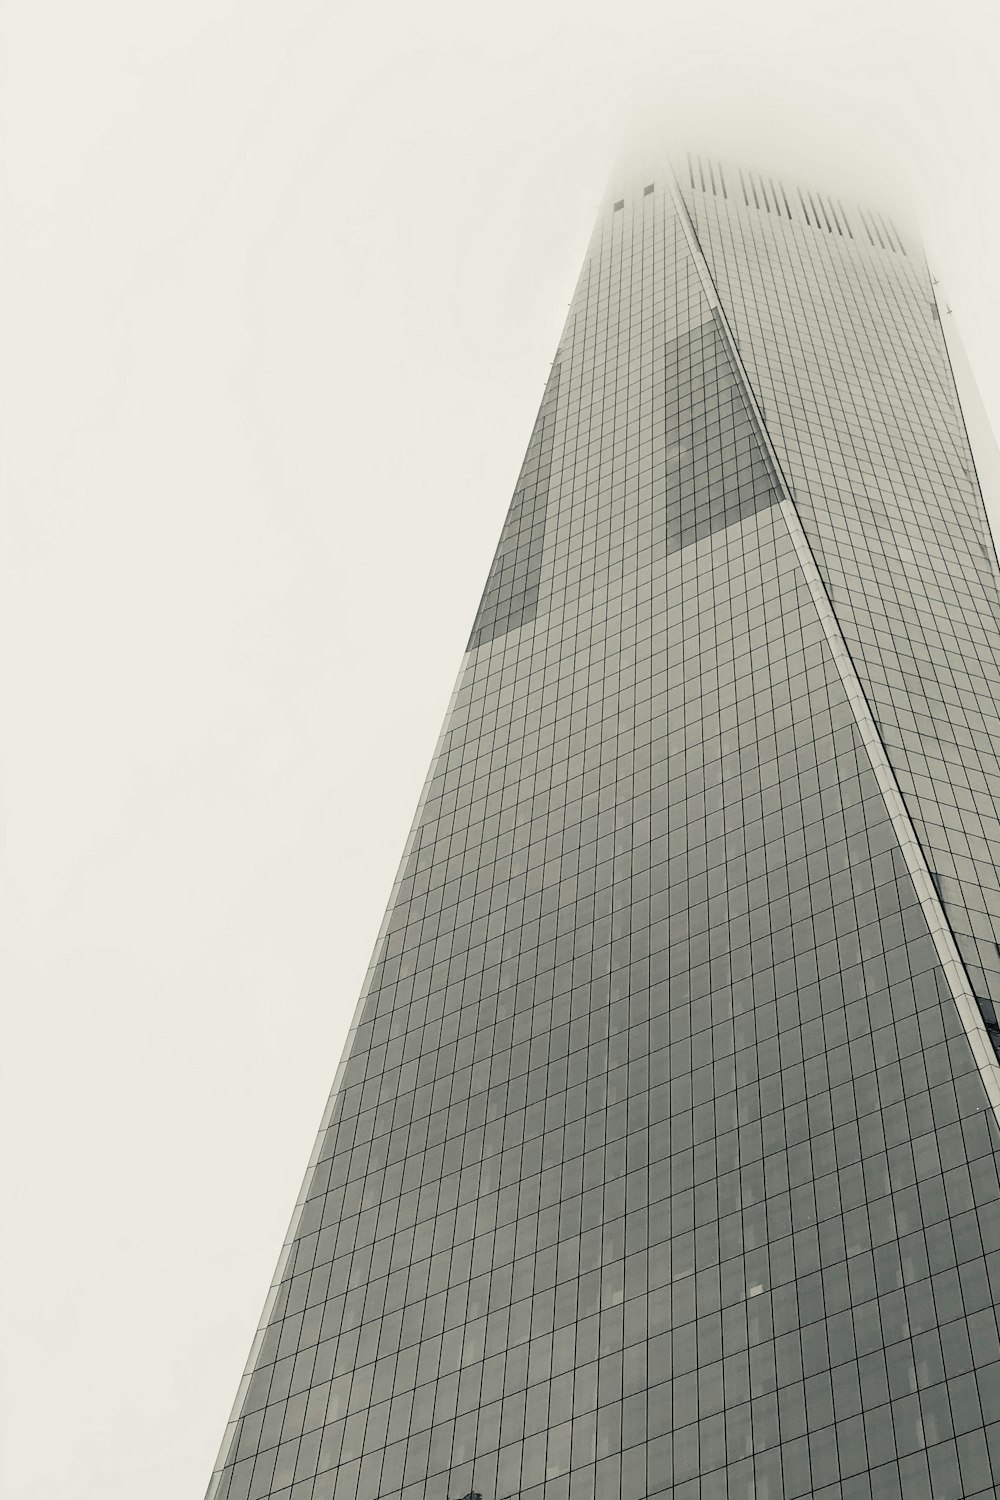 Photographie en contre-plongée d’un immeuble de grande hauteur en verre